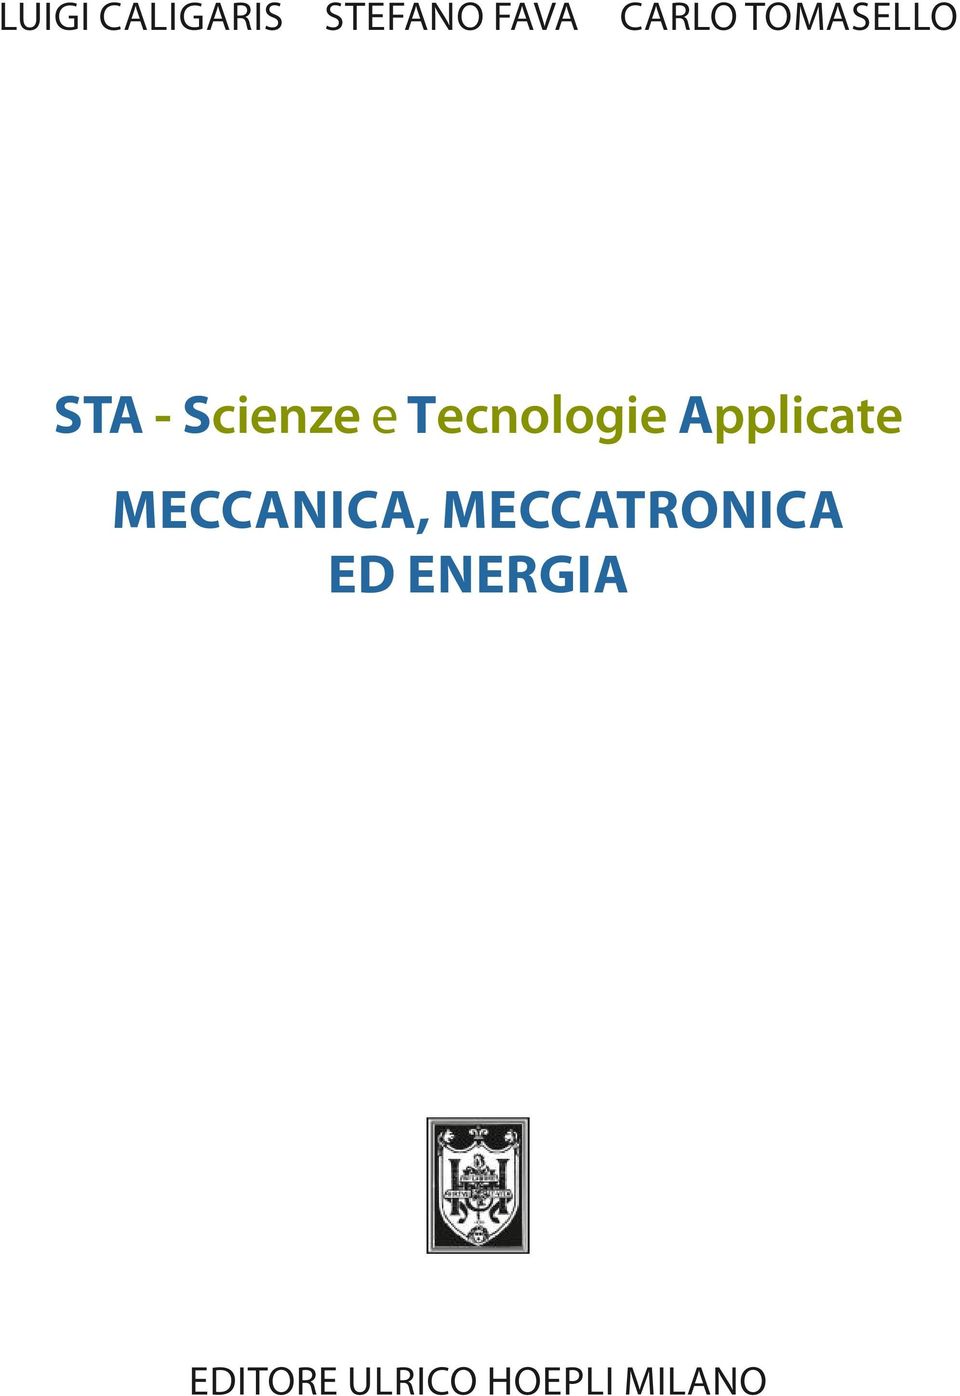 Applicate MeccAnicA, MeccATronicA ed